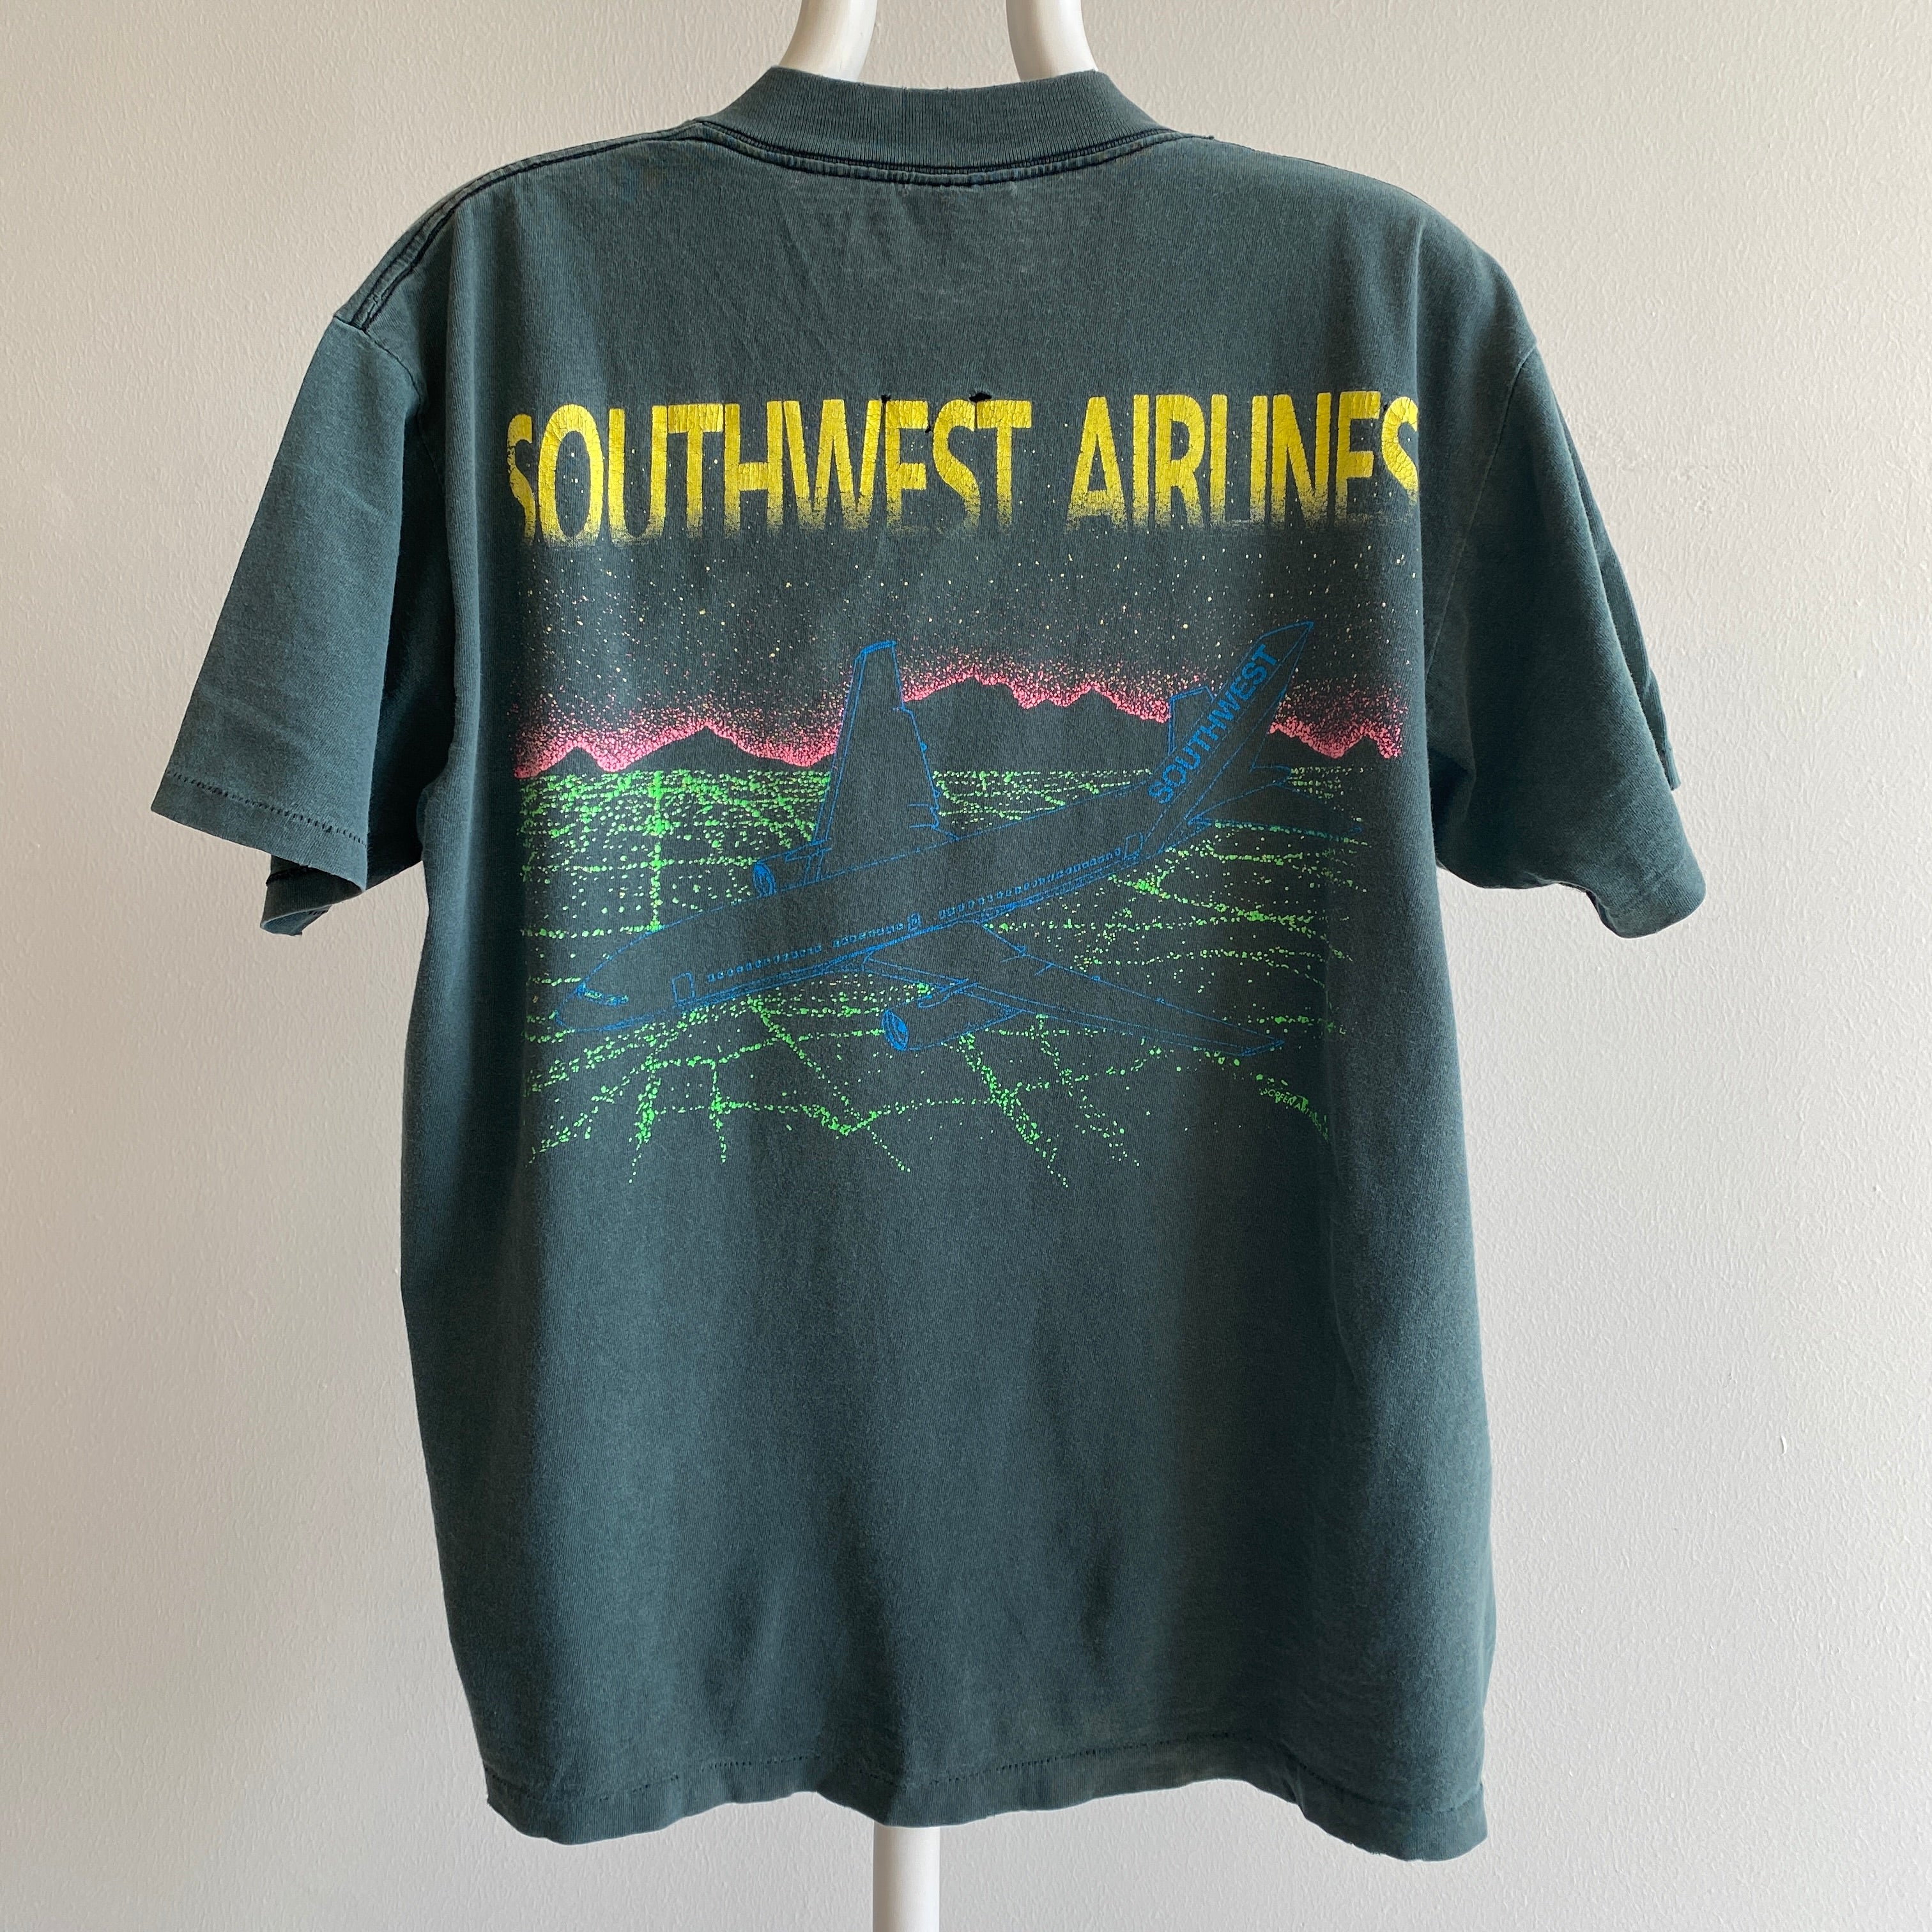 T-shirt gris/bleu parfaitement battu par Southwest Airlines des années 1990 - Collection personnelle